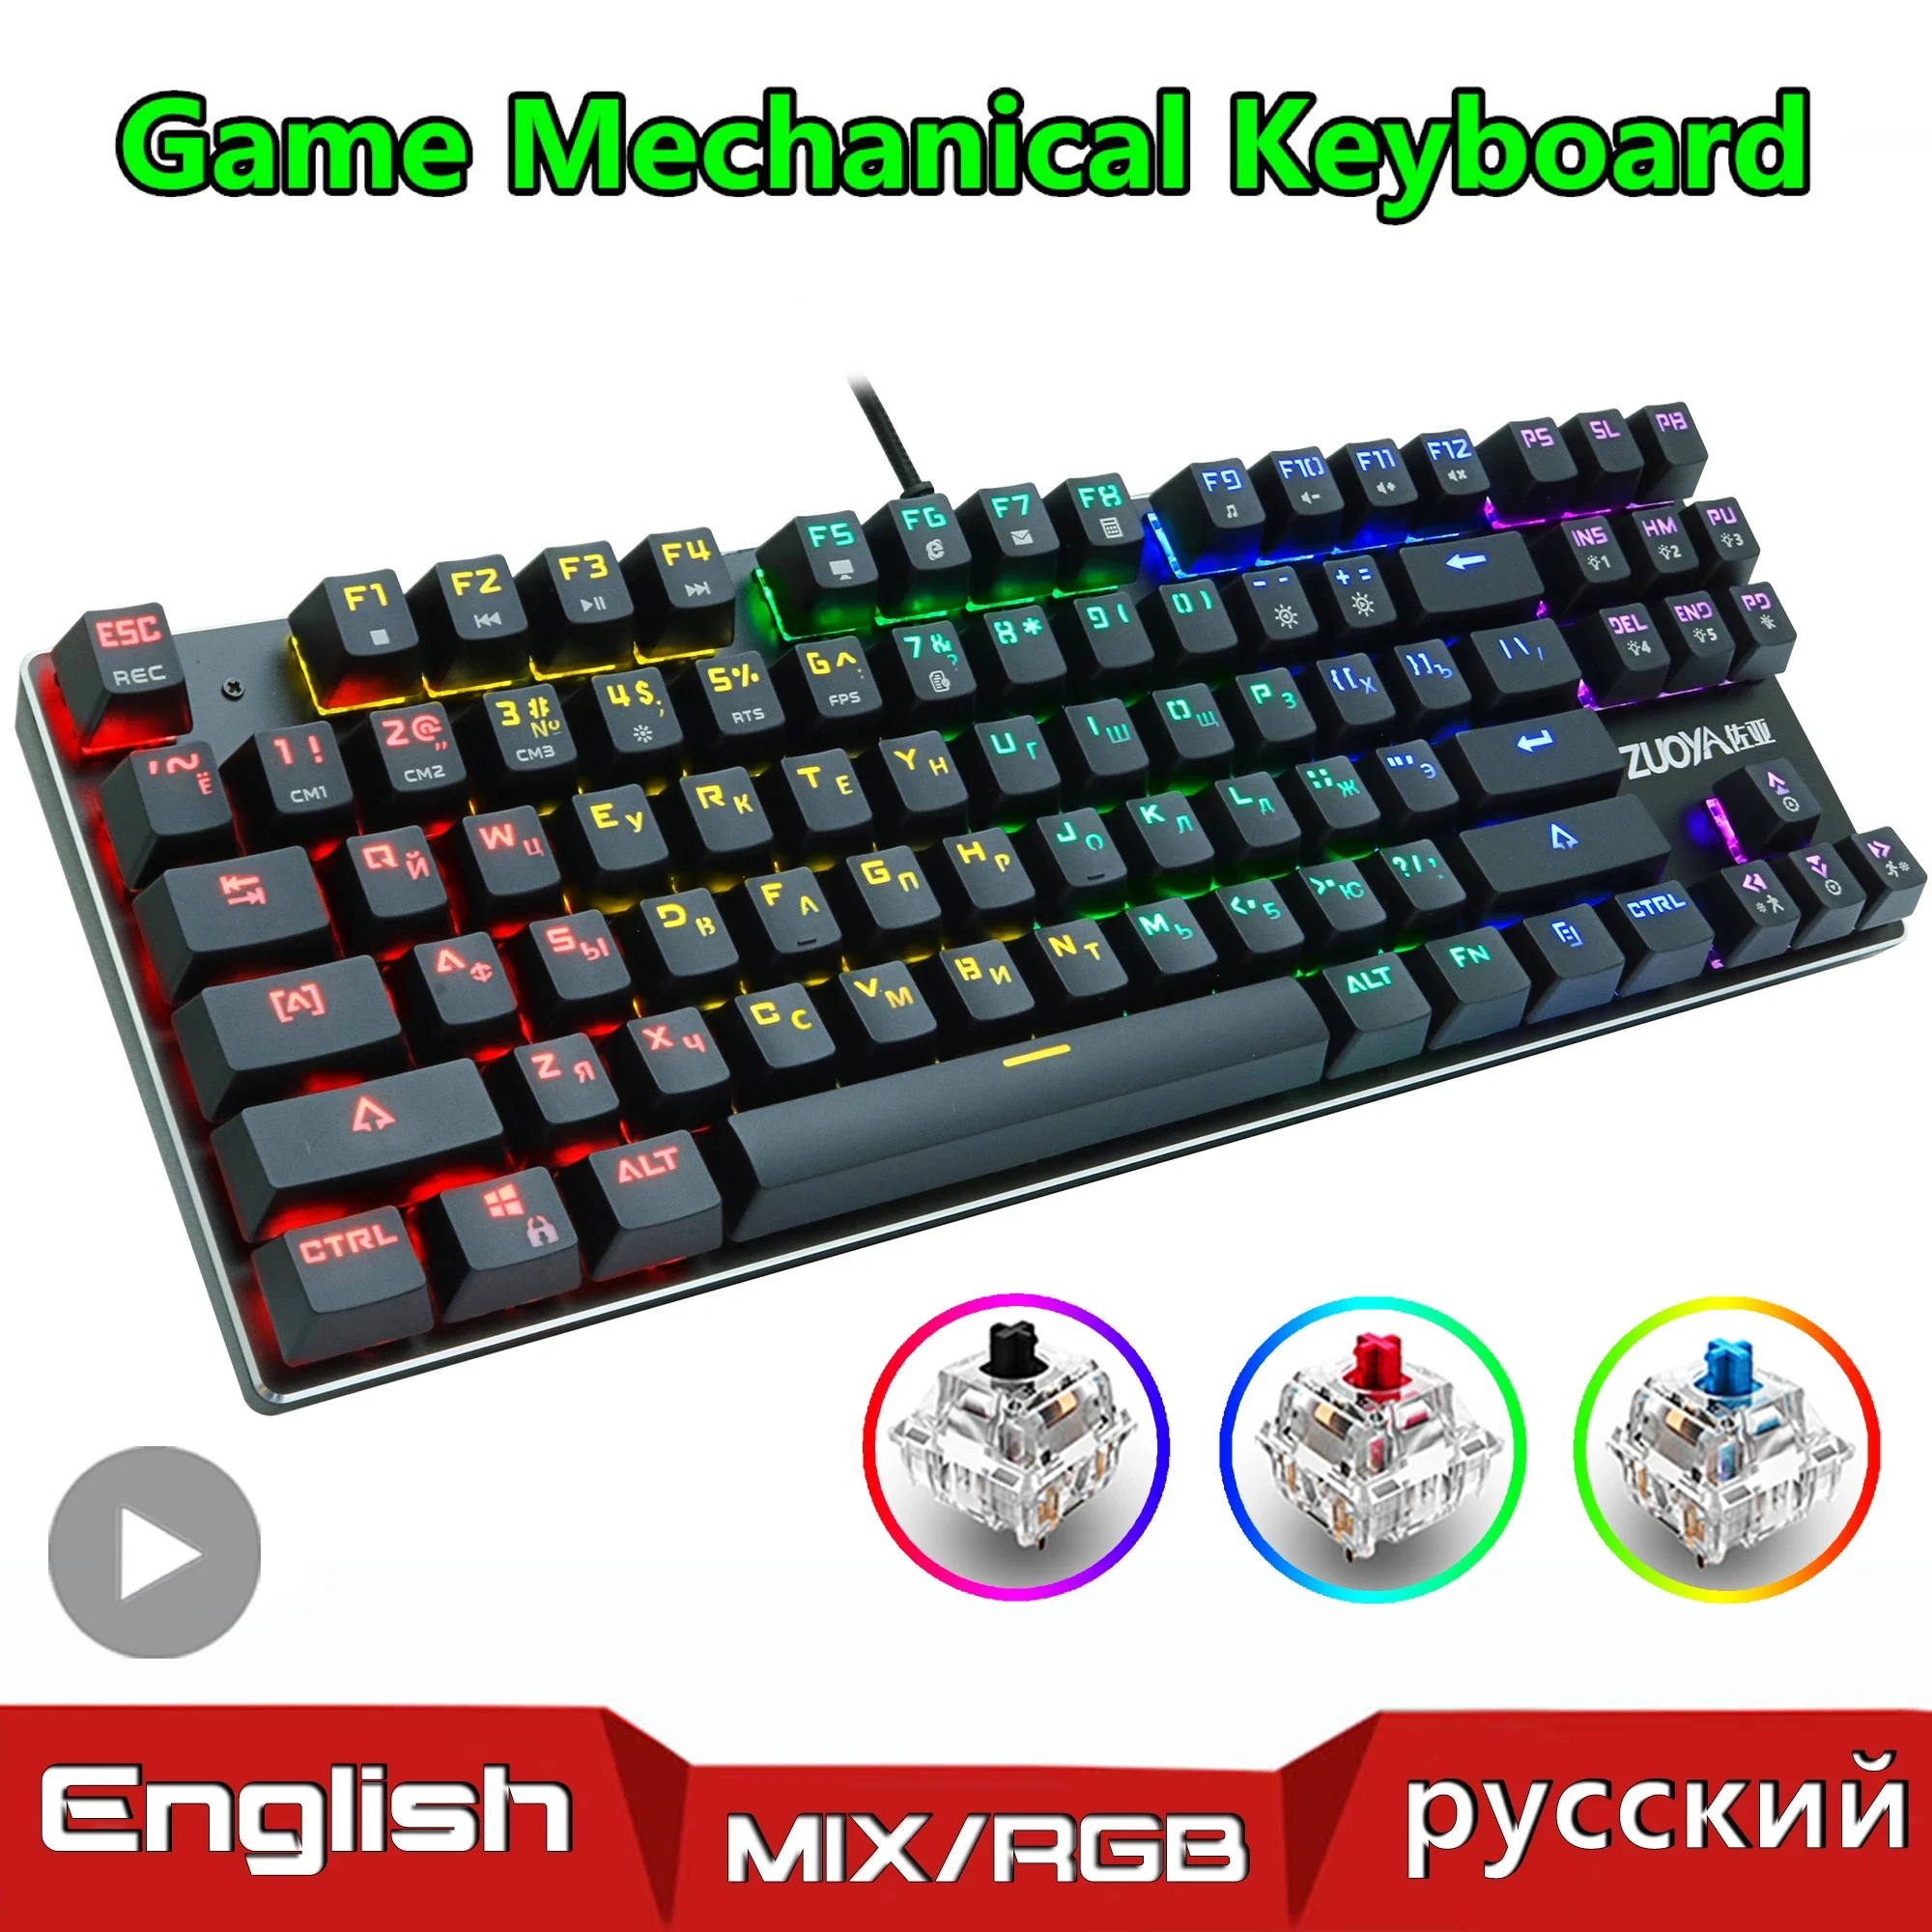 

Backlit RGB Gaming Mechanical Keyboard Gamer Mechanic Kit In Russian Language PC Laptop USB Wired Ergonomic Keycaps Keybord Game